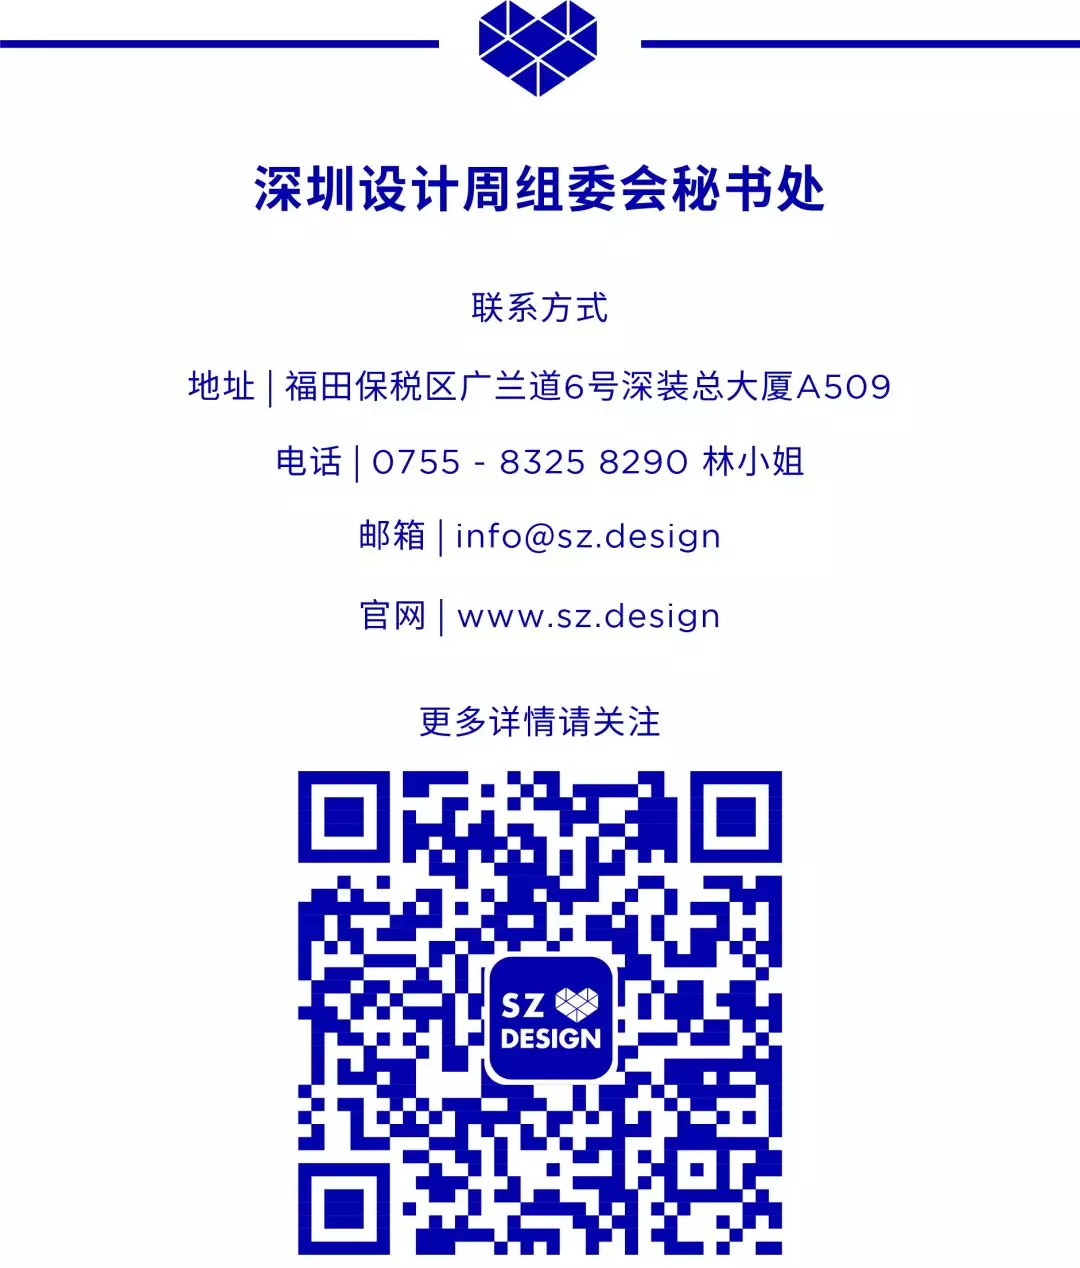 2020深圳设计周暨环球设计大奖重点板块策划执行团队遴选结果公示